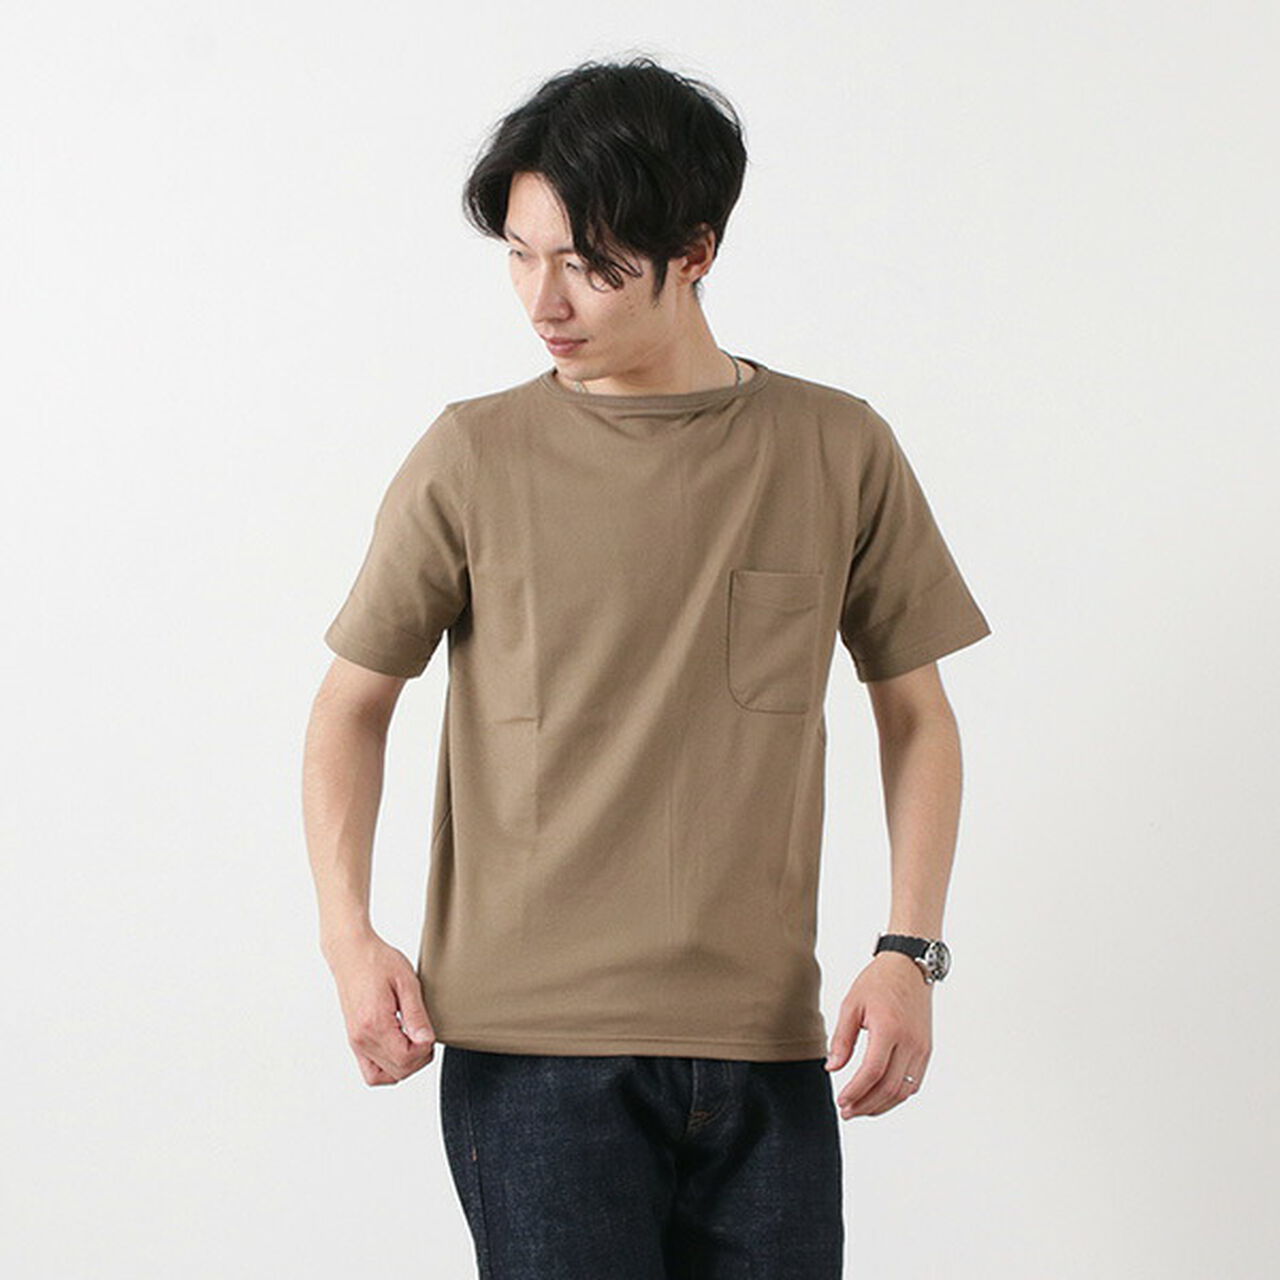 TE500 Summer Knit Pocket T-Shirt,LightMocha, large image number 0